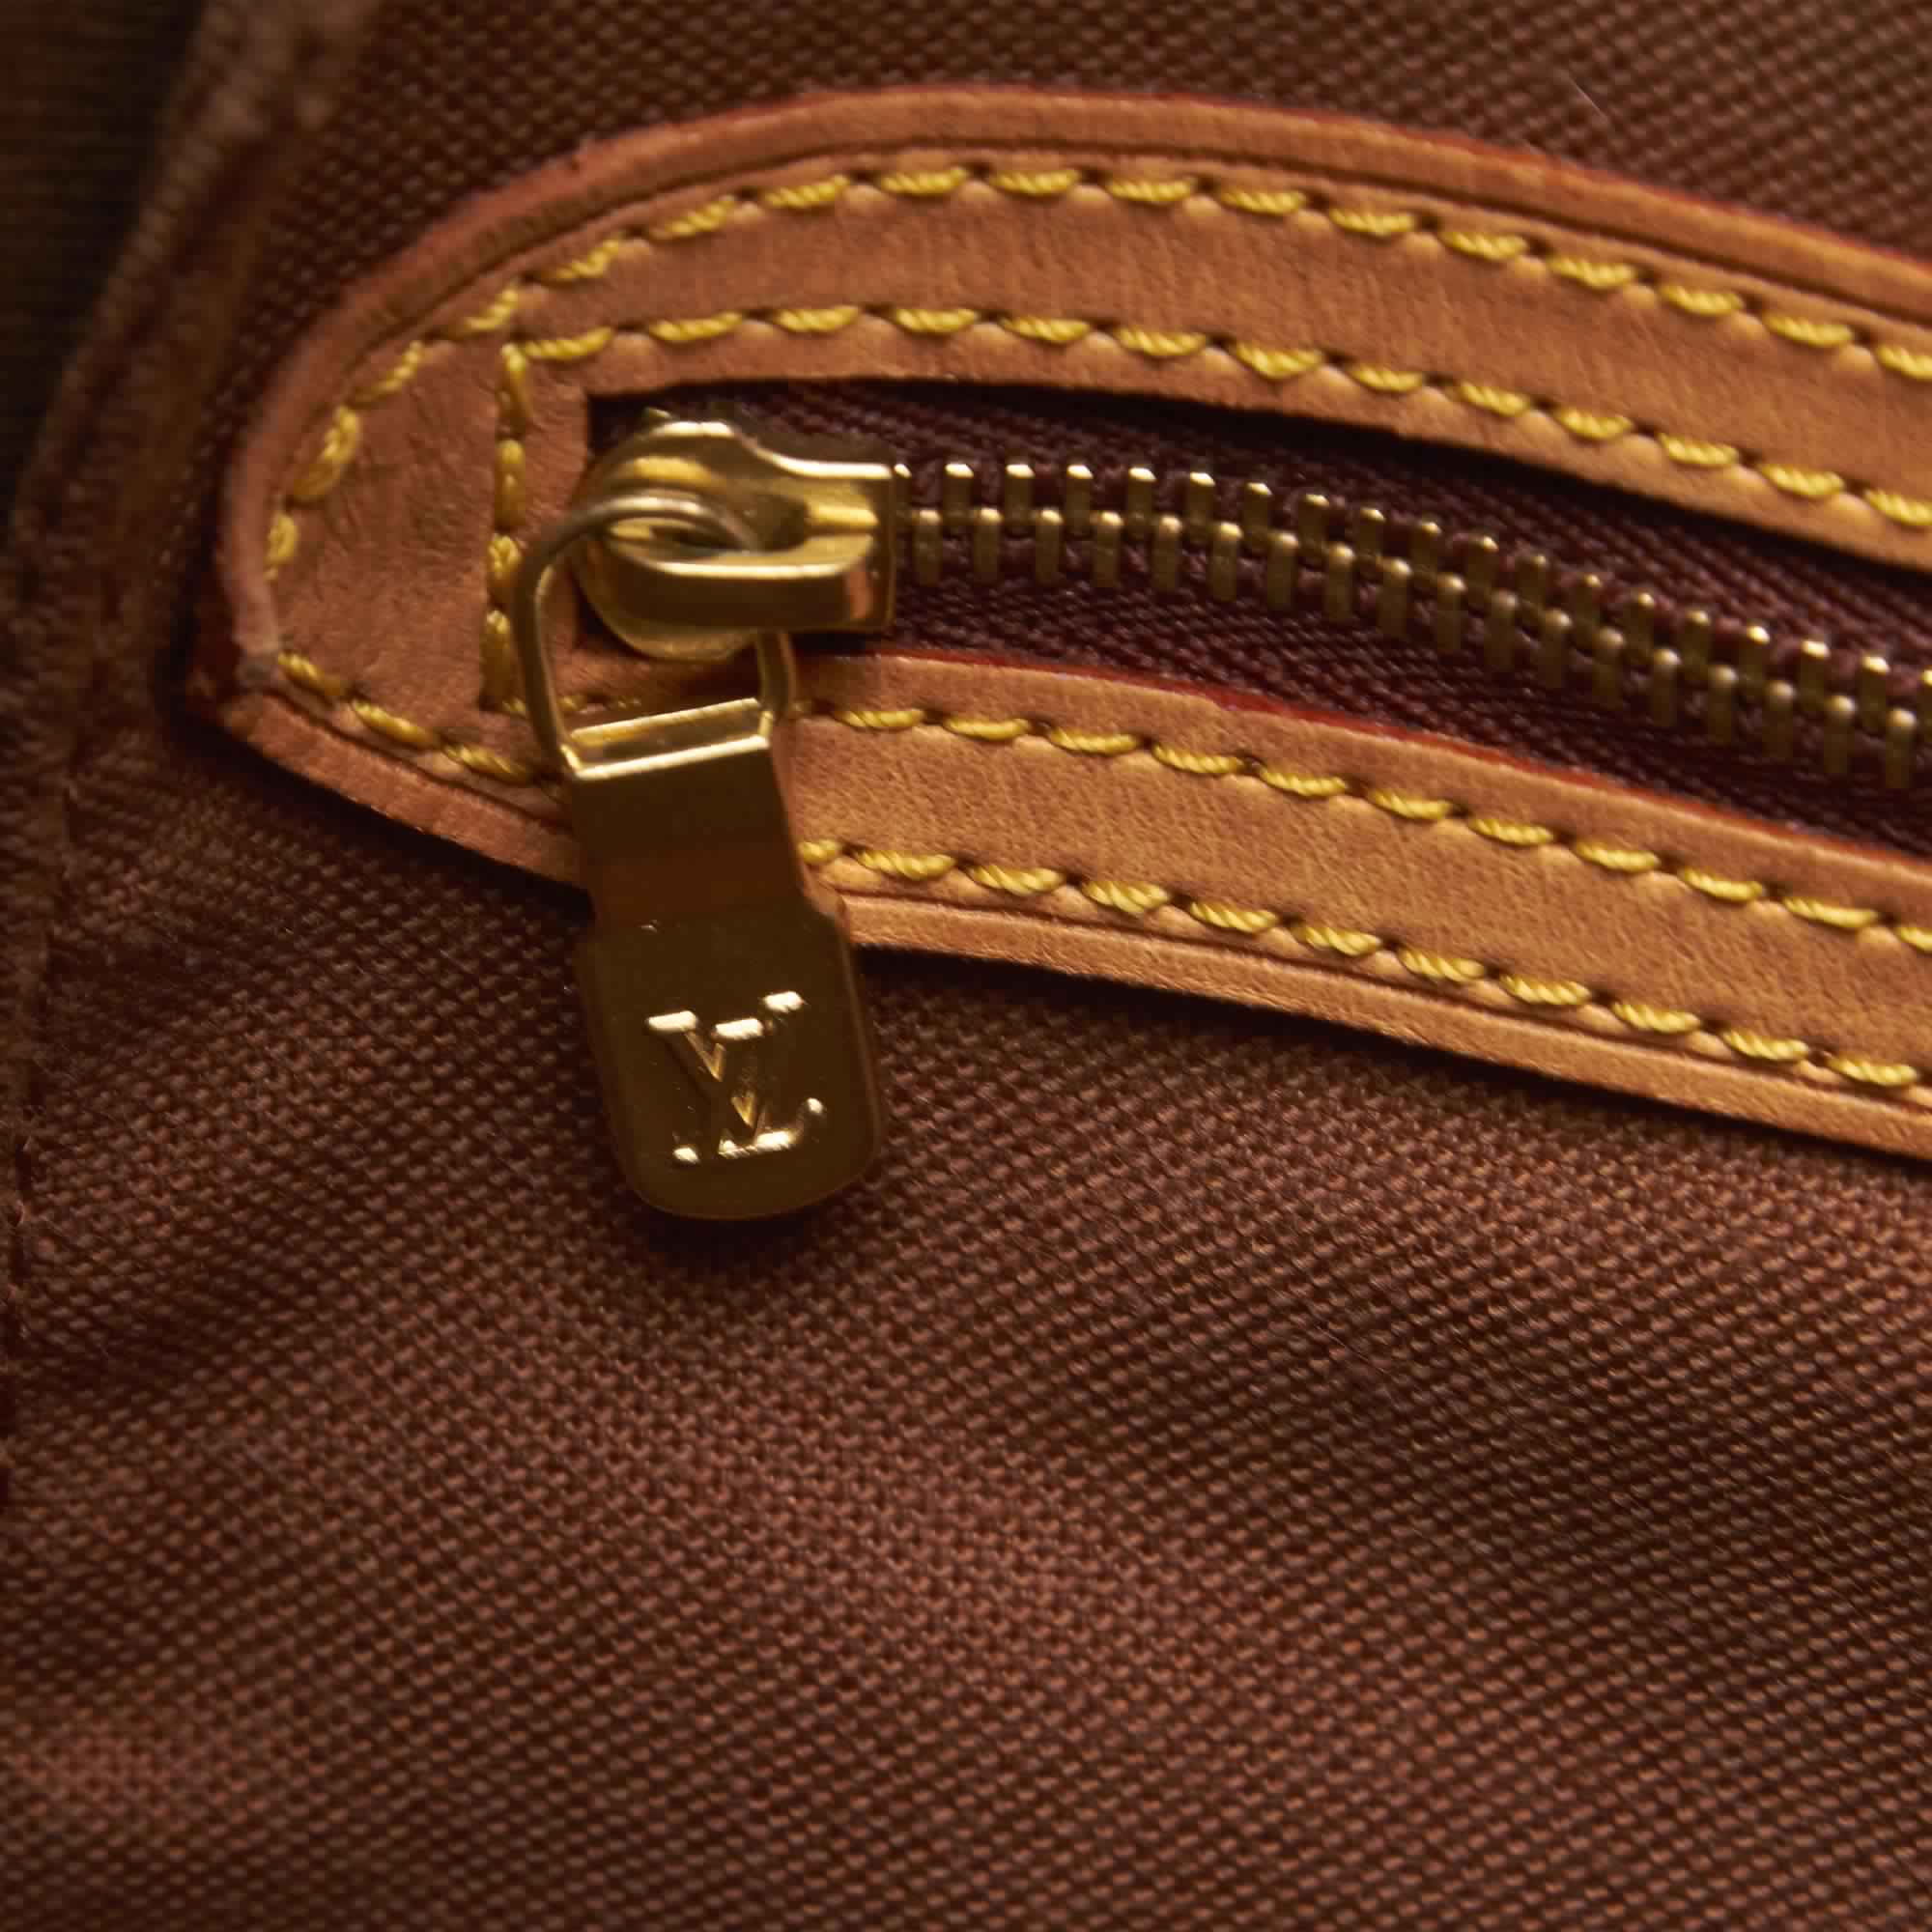 Louis Vuitton, Bags, Louis Vuitton 995 Lv Cup St Tropez Drawstring  Backpack